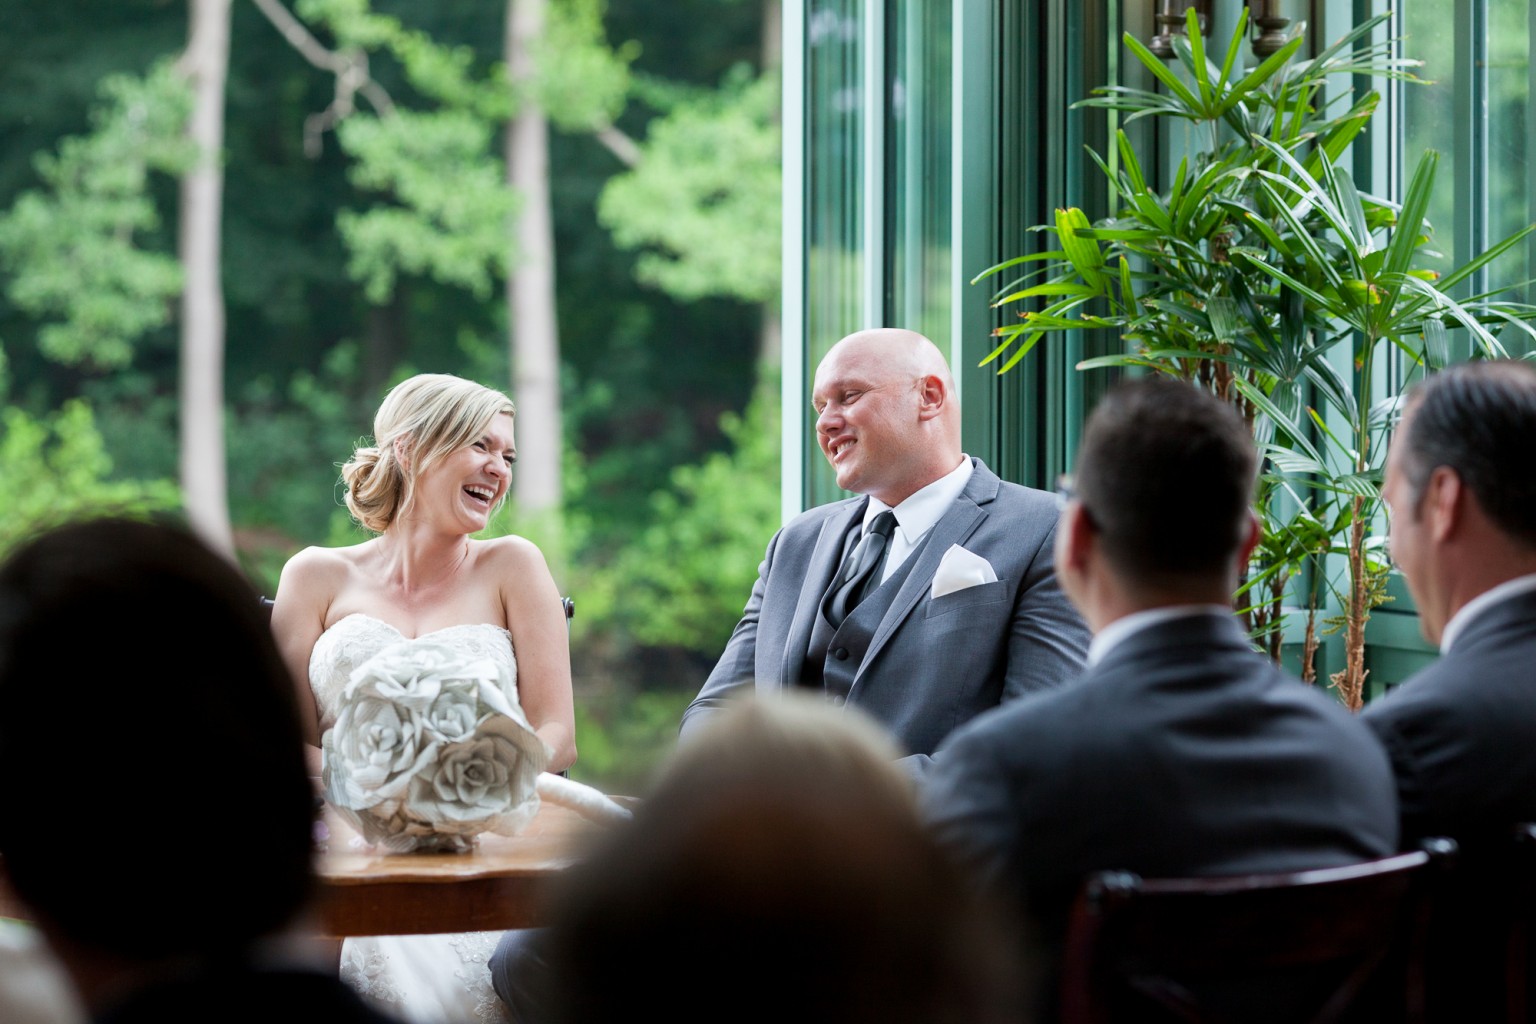 I Do - Bruidsfotograaf Peter Lammers bij Kasteel Engelenburg - bruidspaar zegt ja!